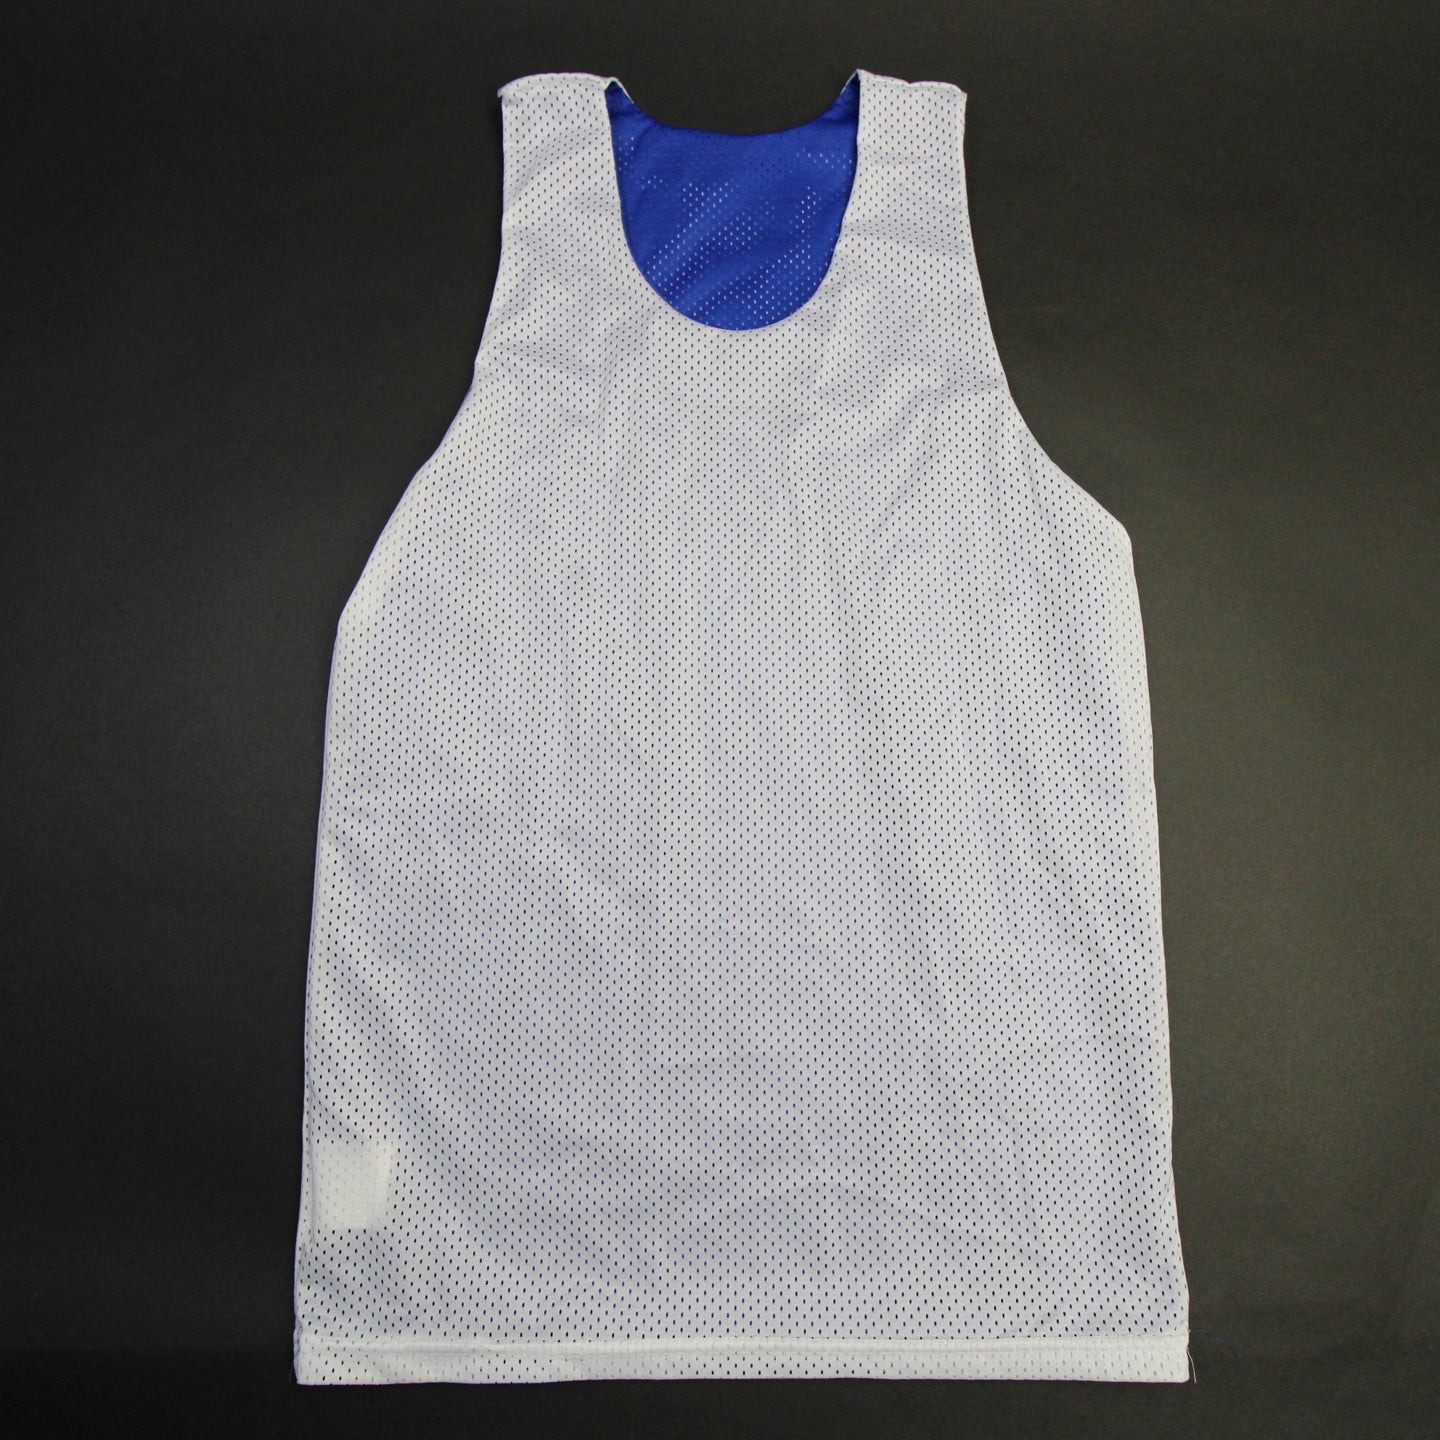 Dallas Mavericks Nike Practice Jersey - Basketball Men's White/Blue New  XLTT